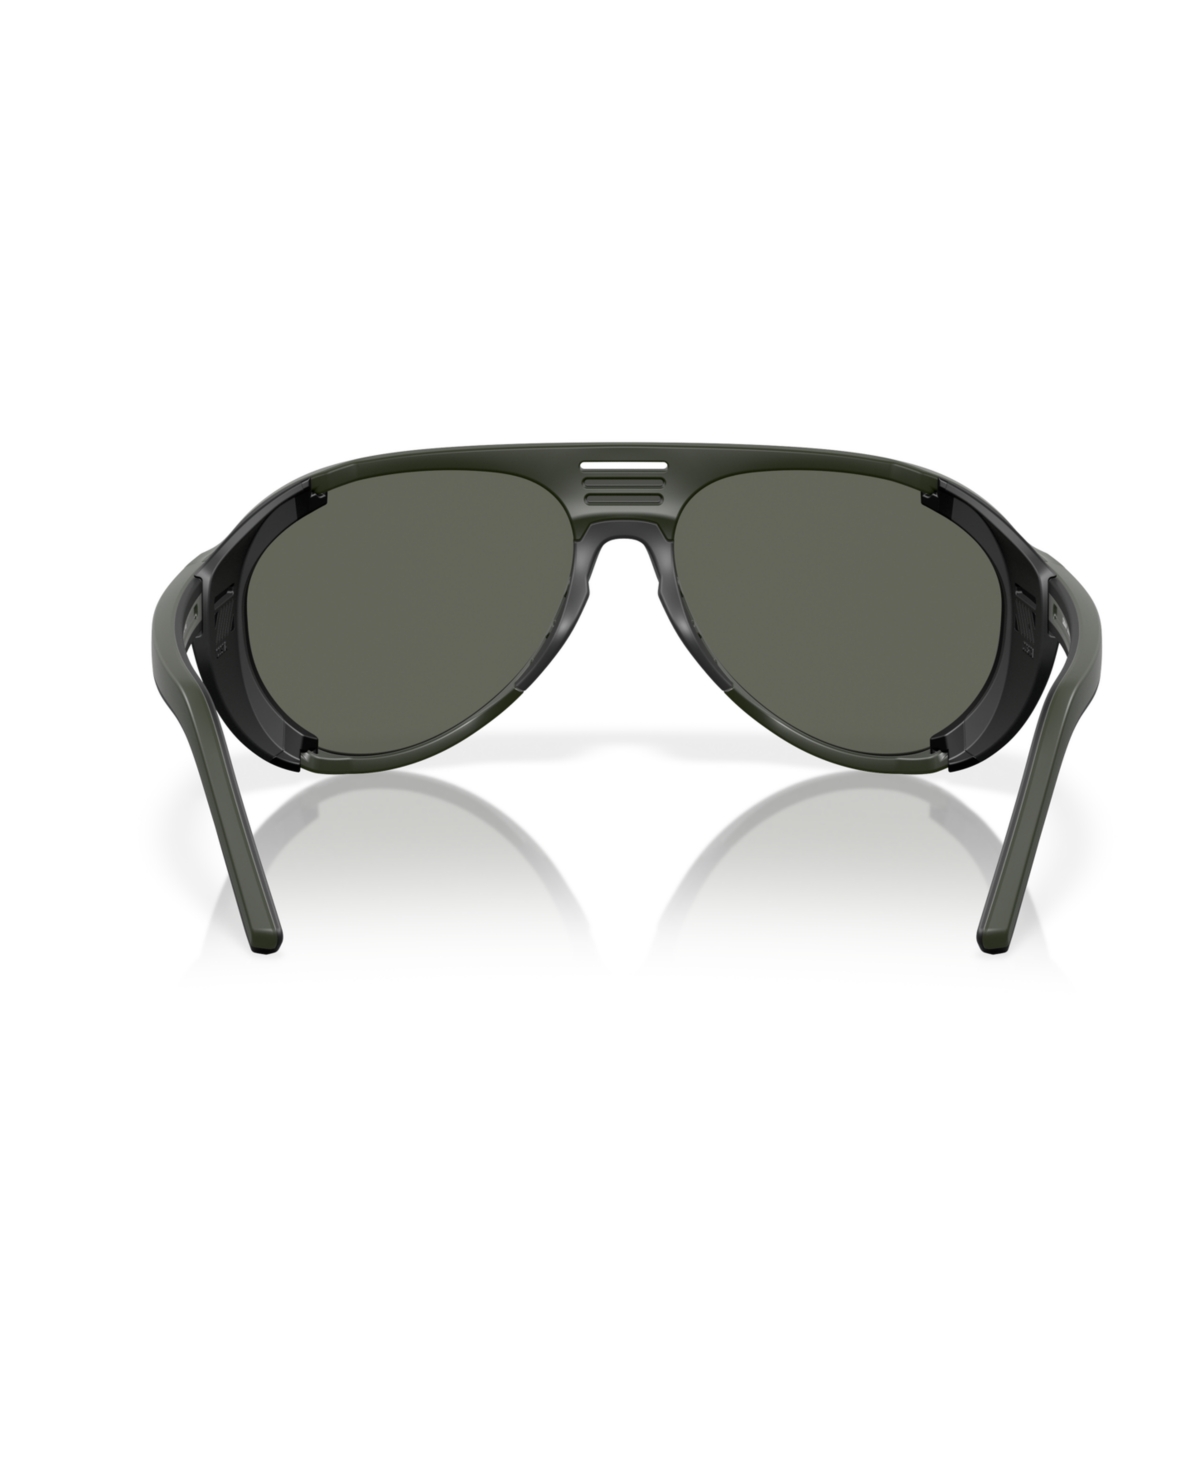 Shop Costa Del Mar Men's Polarized Sunglasses, Grand Catalina 6s9117 In Matte Olive